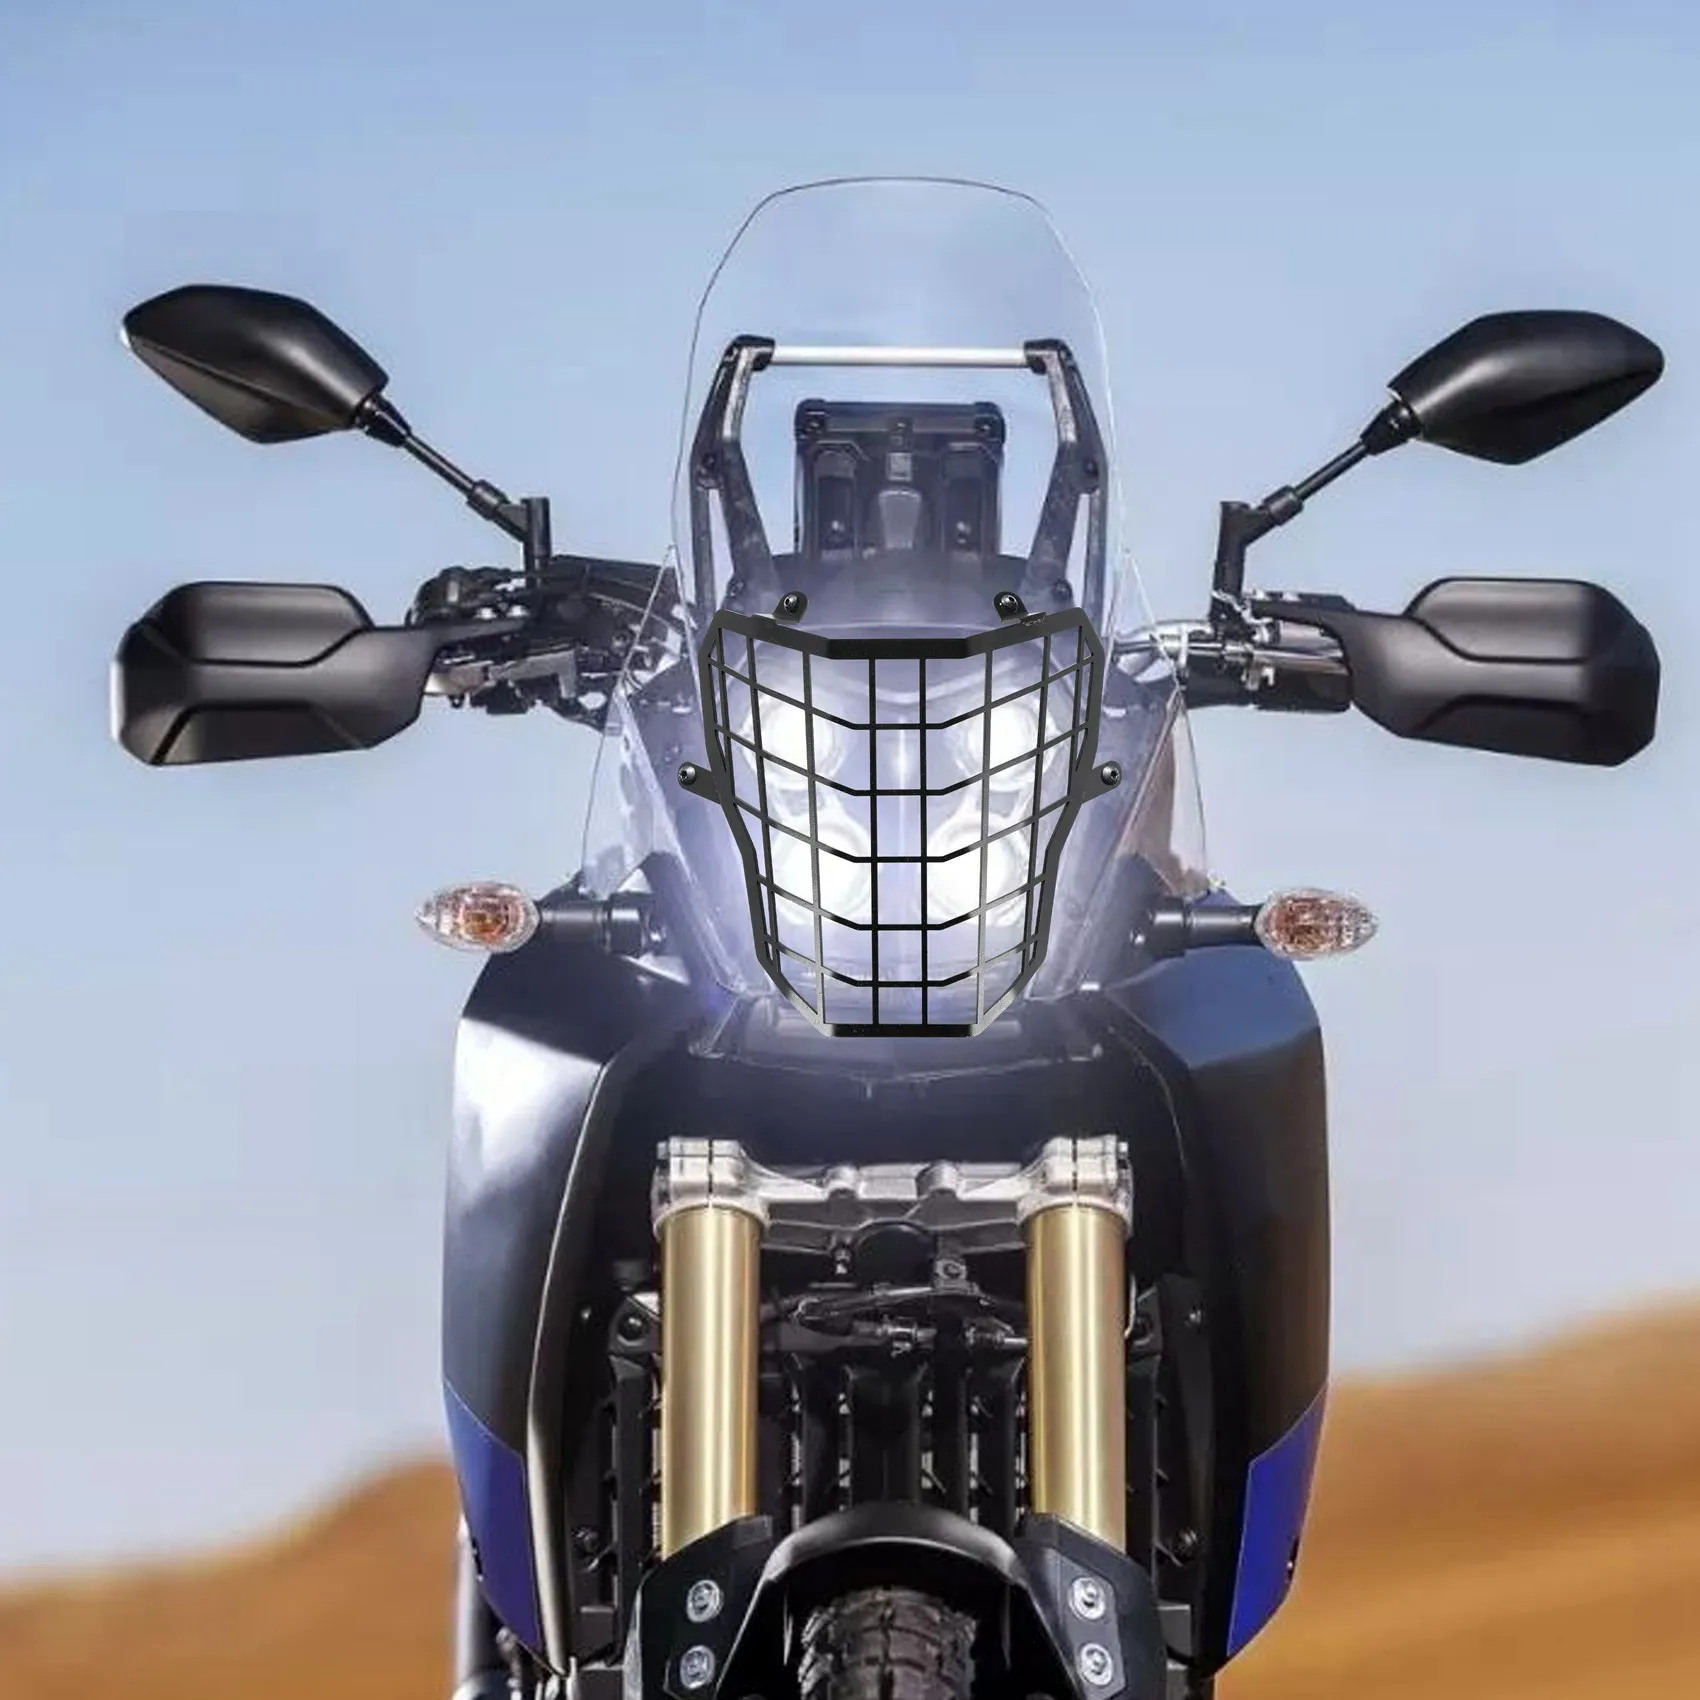 

Защитная накладка на фару мотоцикла, защитная накладка для мотоцикла Yamaha XT 660 Z Tenere XT660Z 2007-2017